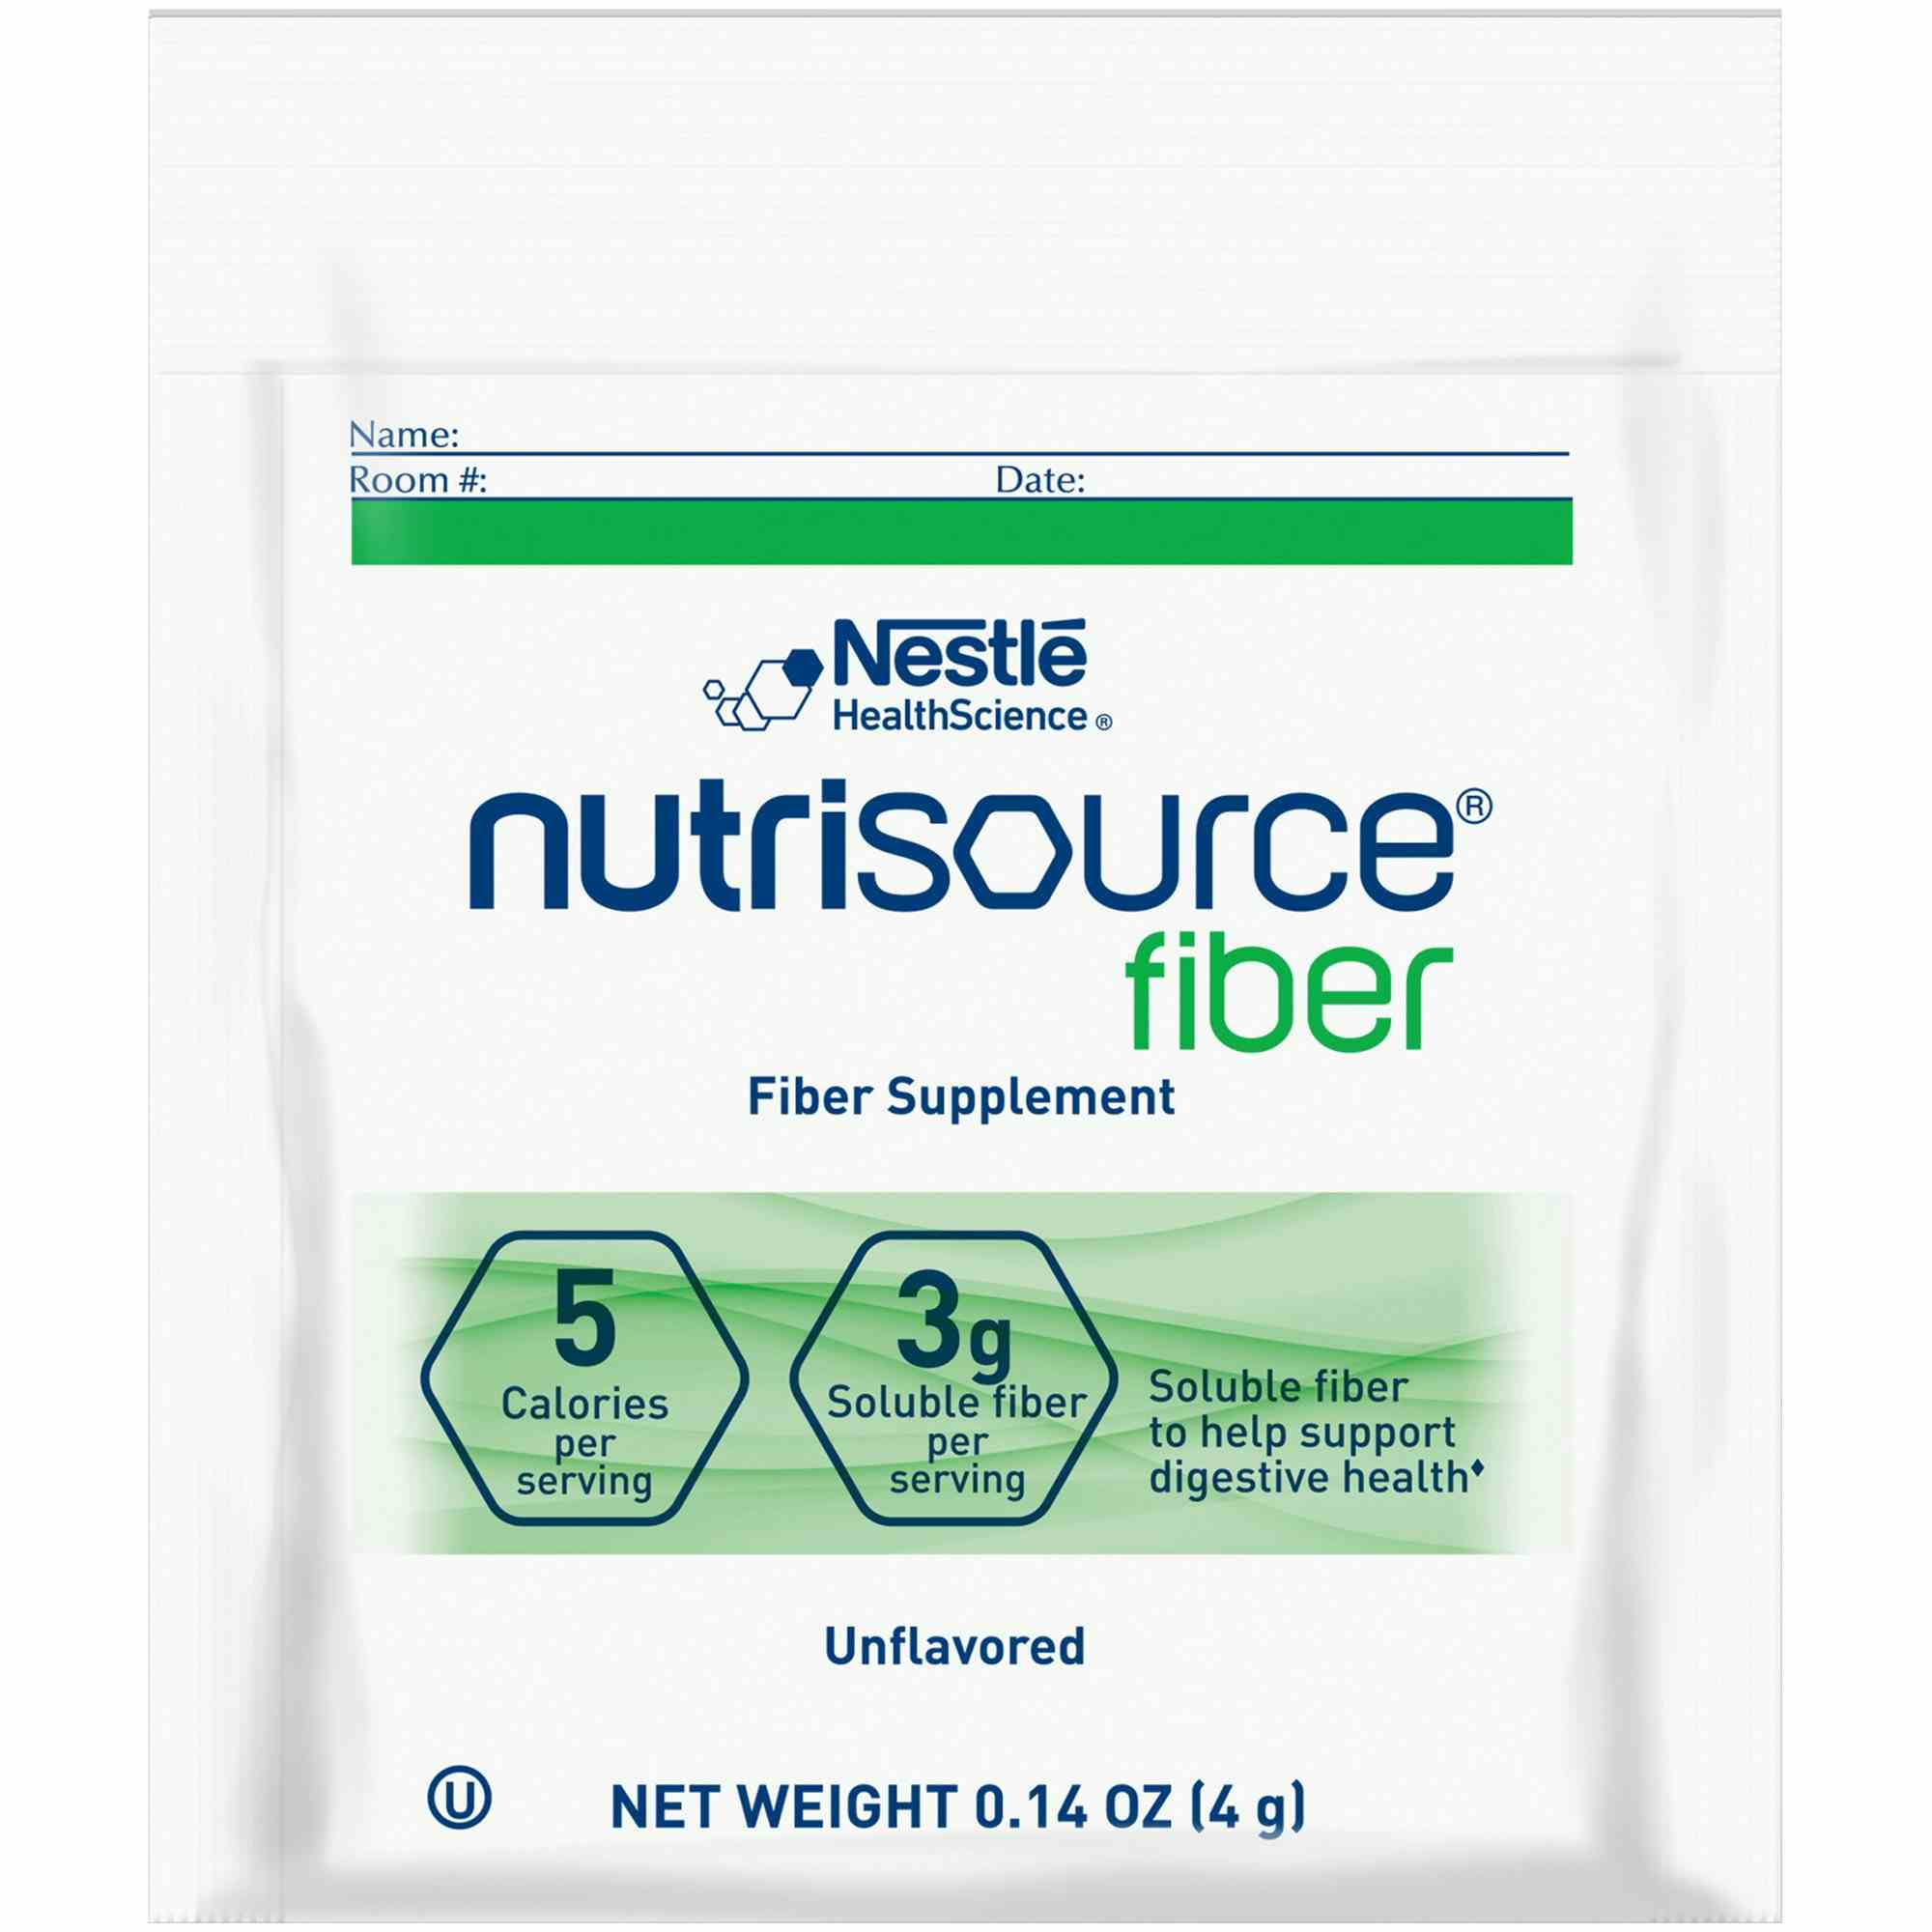 Nestle HealthScience Nutrisource fiber Fiber Supplement Powder, Unflavored, 4 grams  , 10043900976485, Case of 75